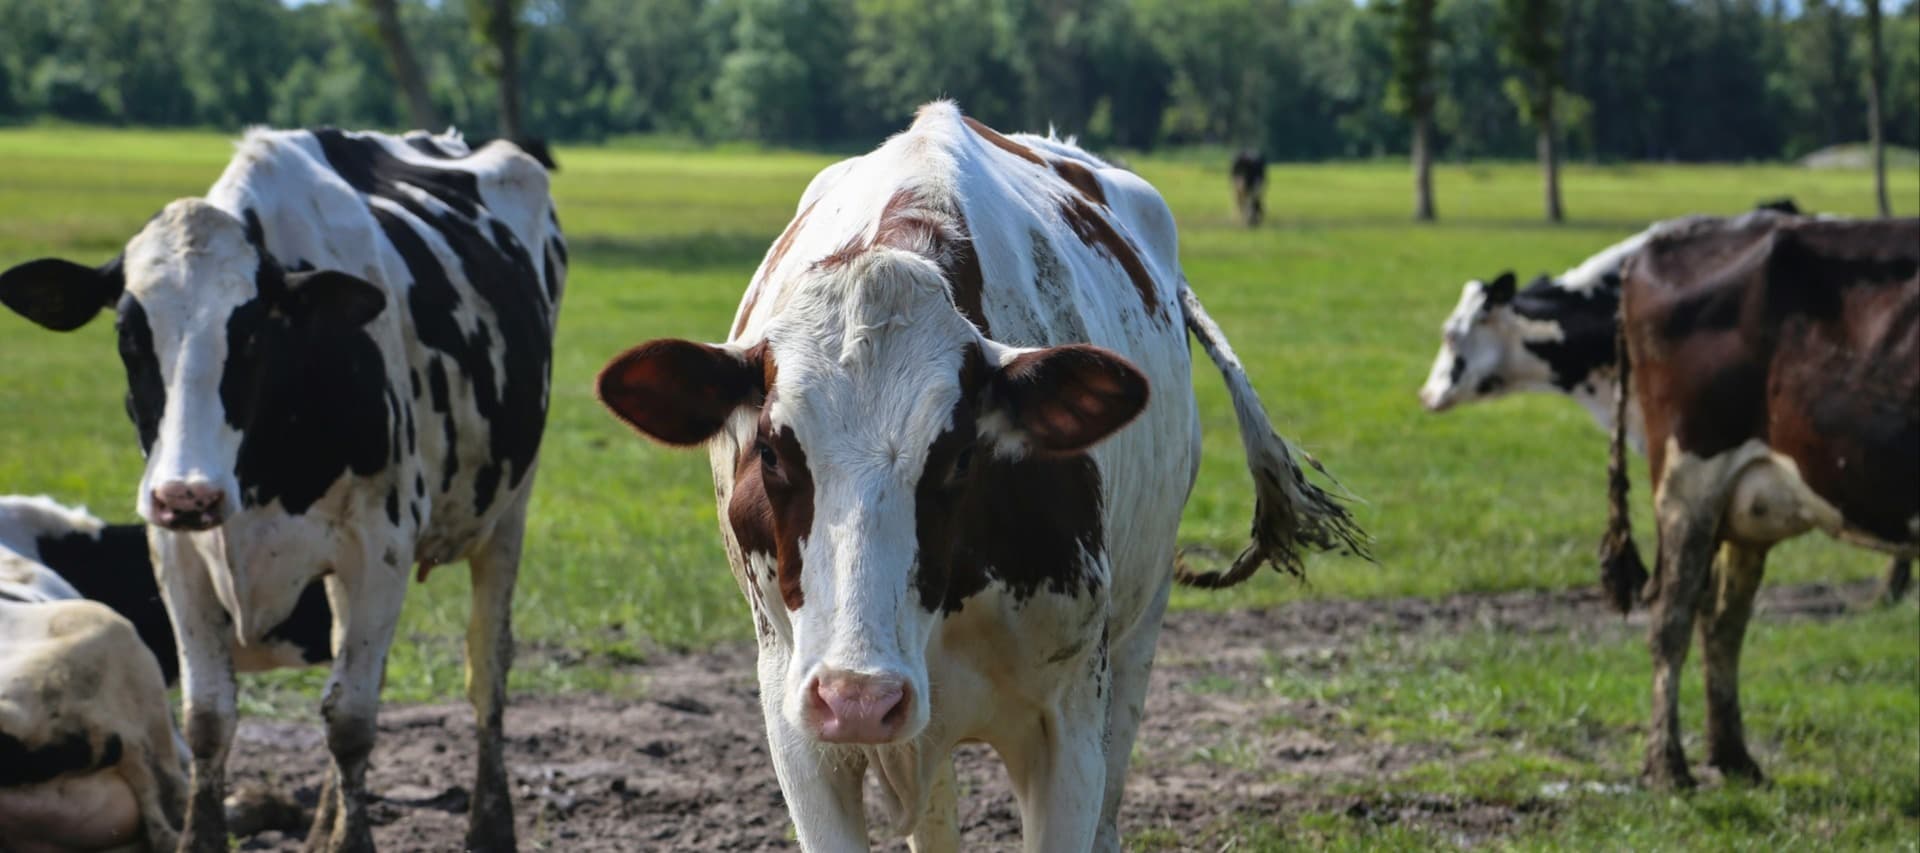 Фото новости: "Дания первой в мире введет налог на выбросы метана от коров"